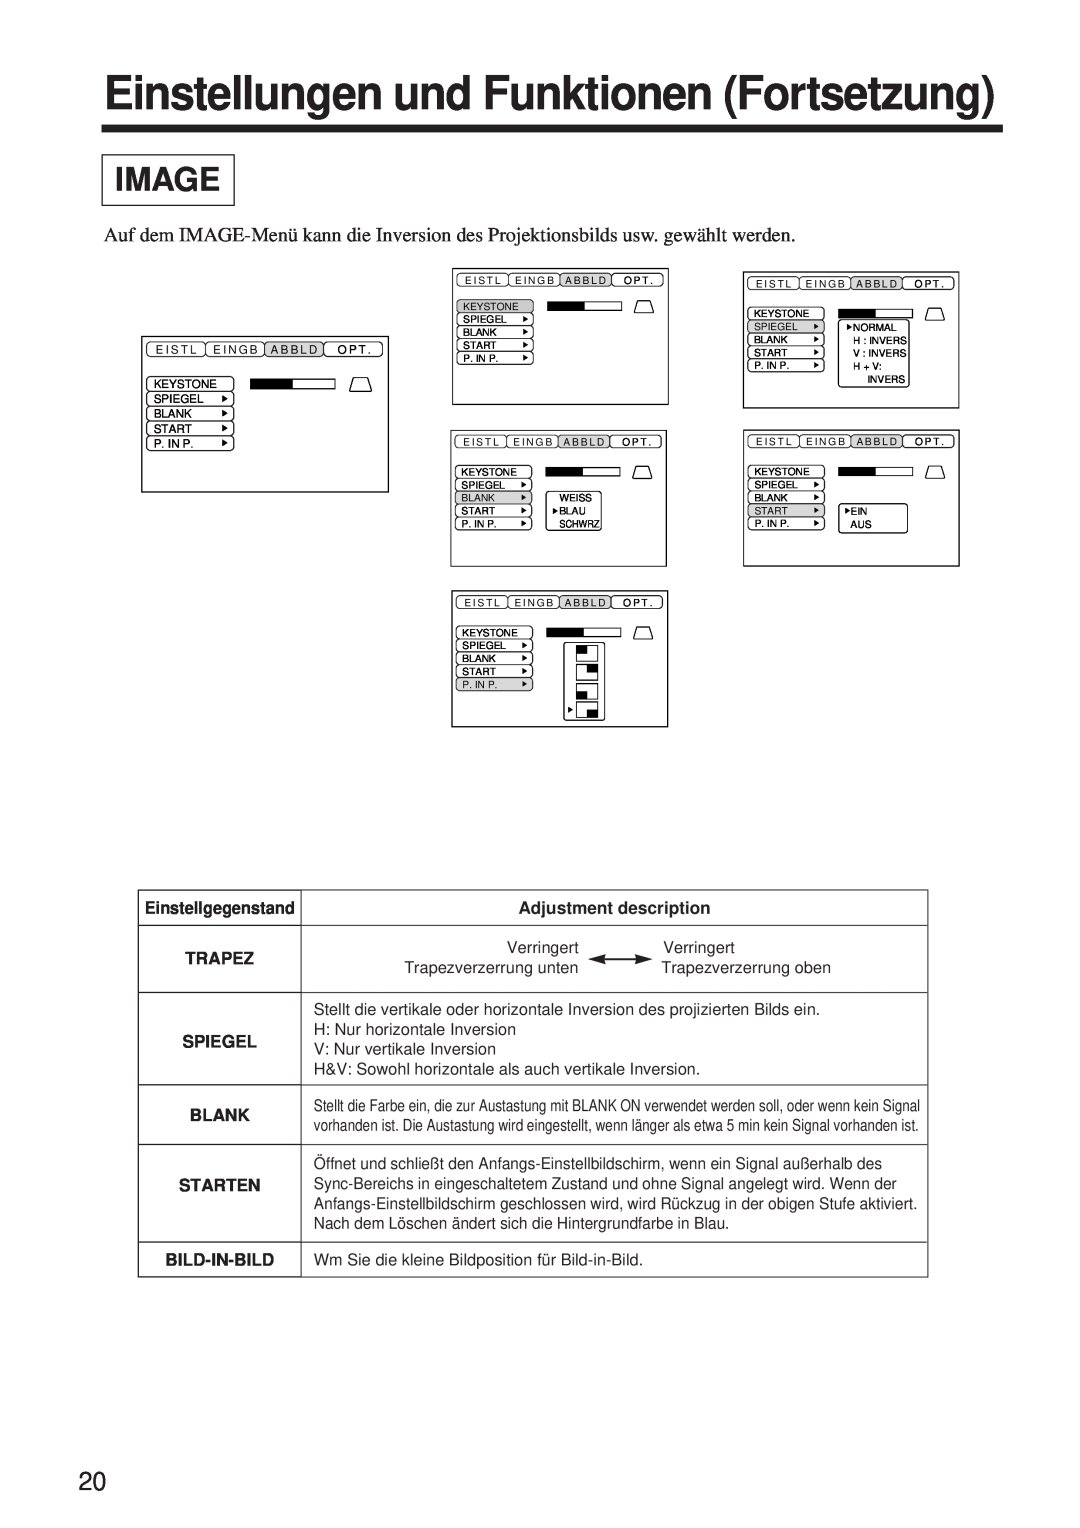 BOXLIGHT MP-650i user manual Einstellungen und Funktionen Fortsetzung, Image, Einstellgegenstand, Spiegel, Schwrz 